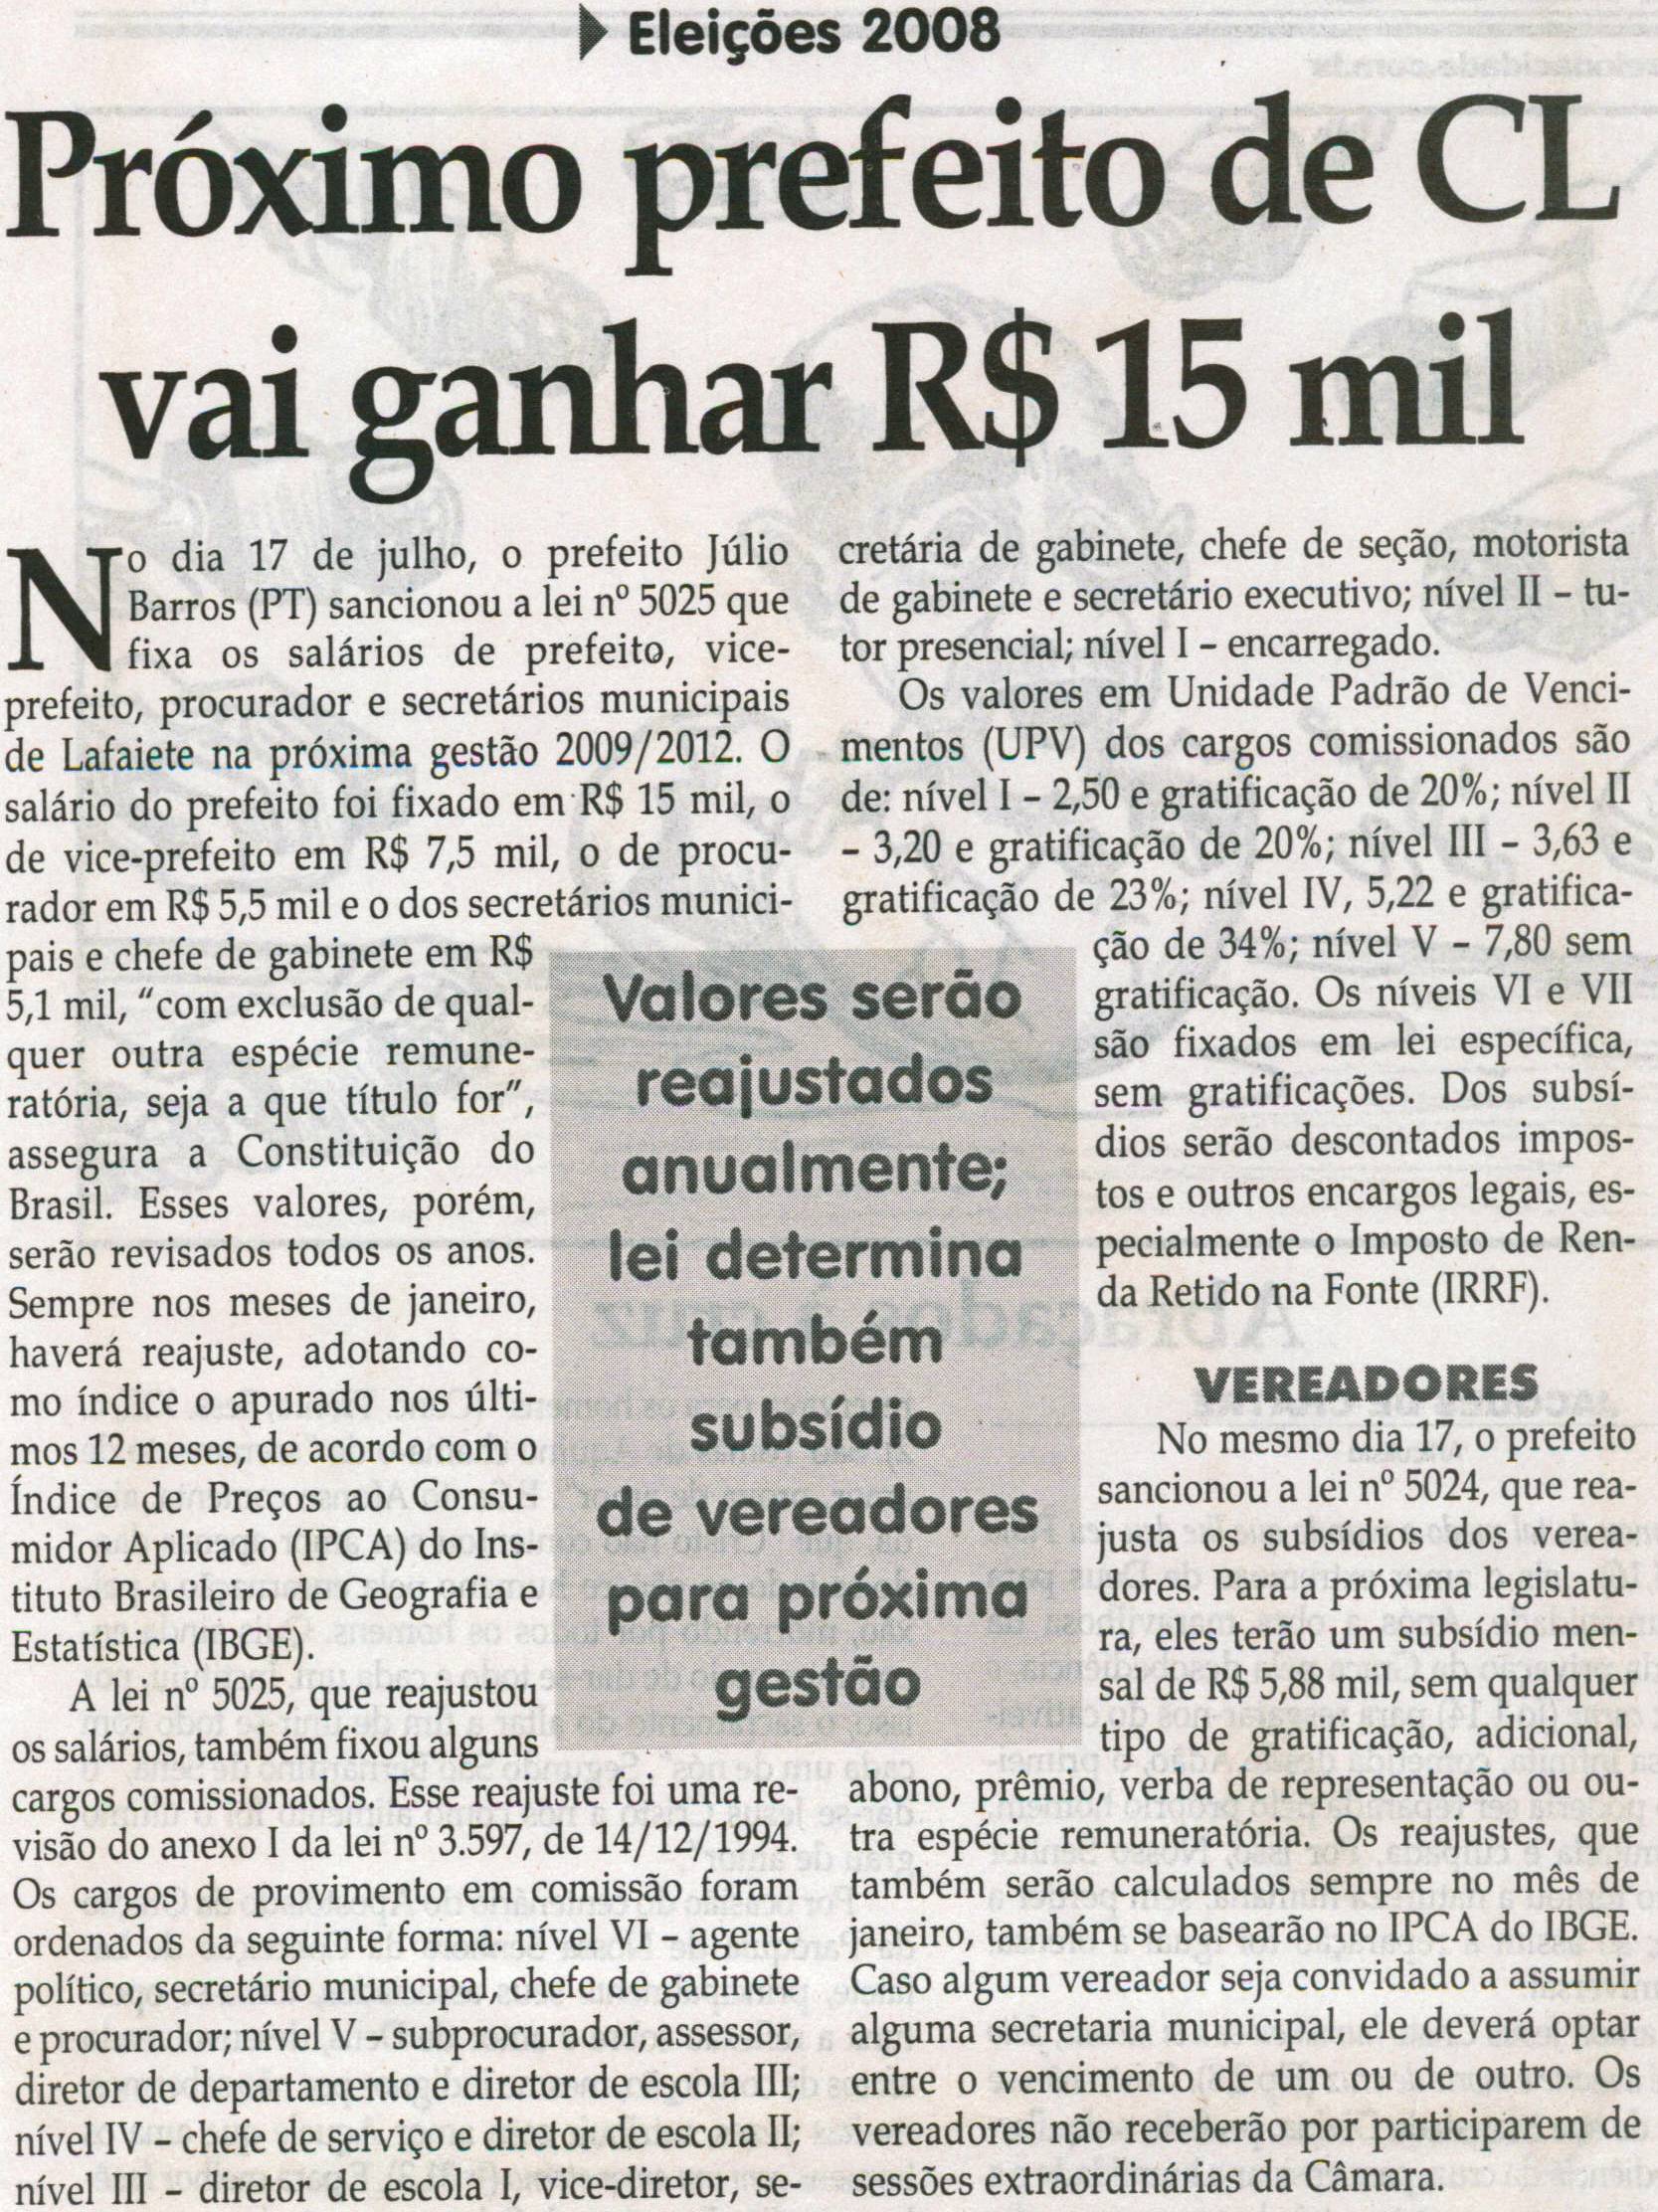 Eleições 2008: próximo prefeito de CL vai ganhar R$15 mil. Jornal Correio da Cidade, Conselheiro Lafaiete, 26 jul. 2008, p. 07.